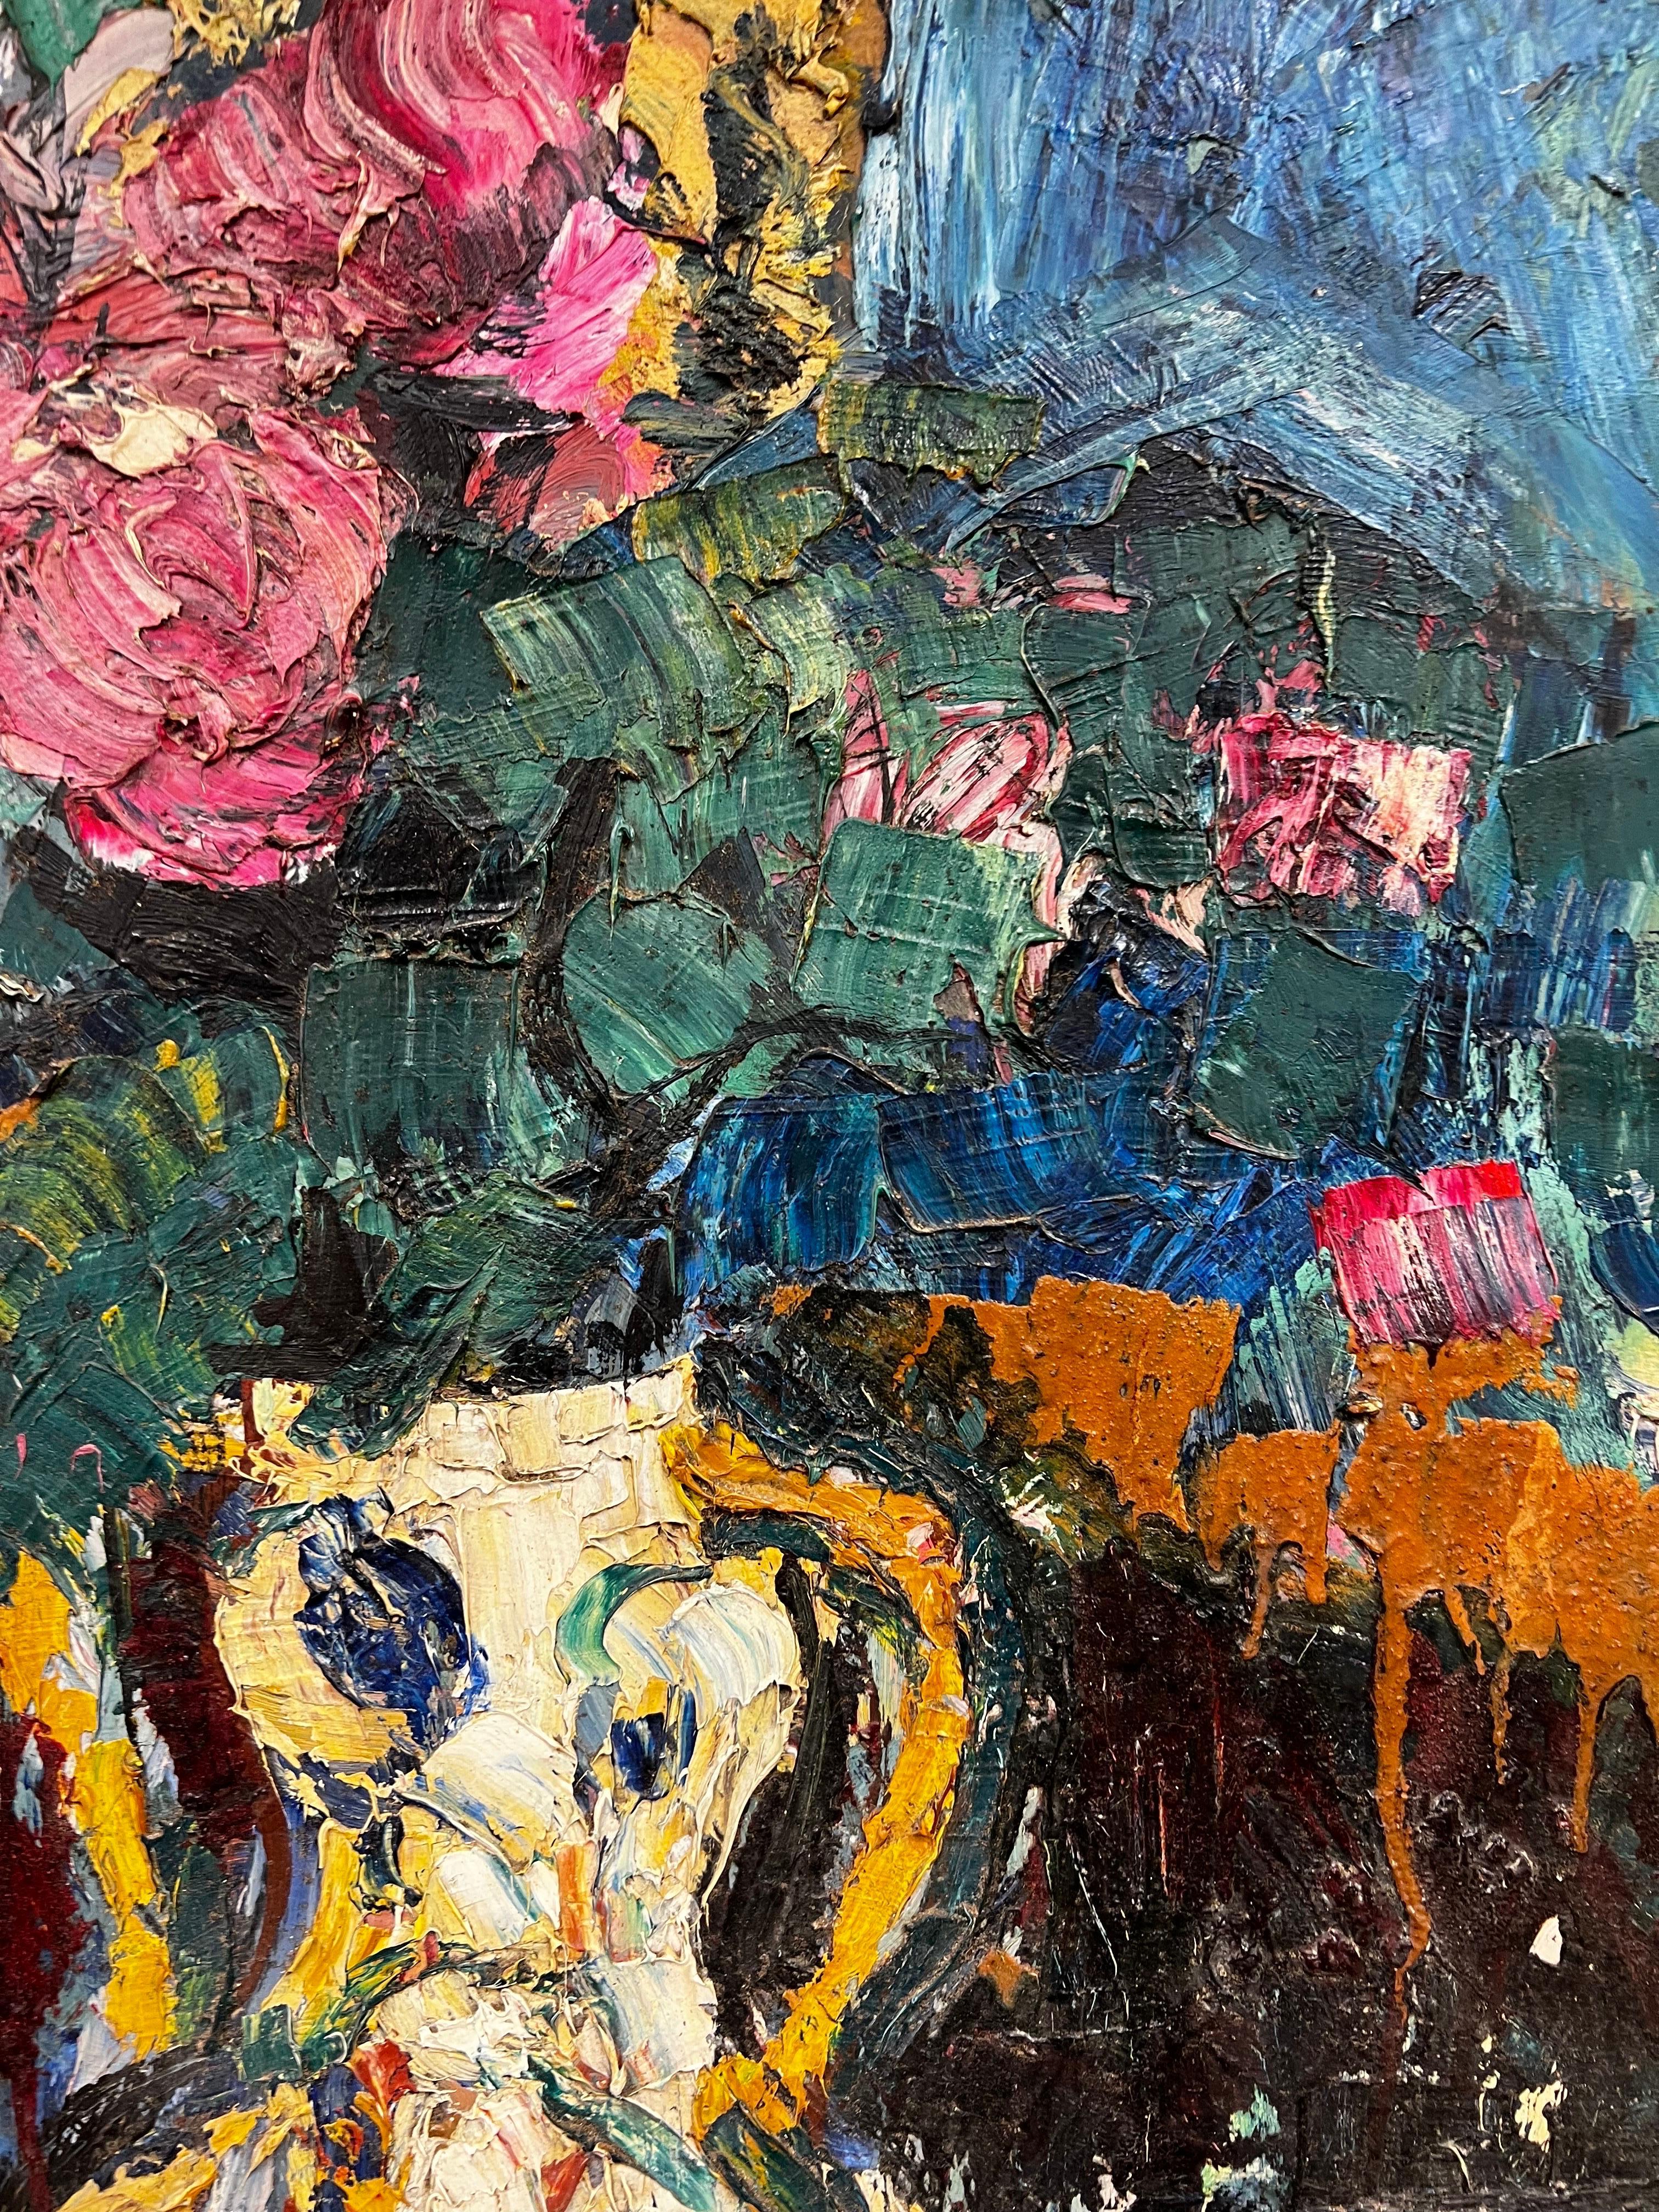 Artisten/Schule: Französische Schule, Mitte 20. Jahrhundert, signiert

Titel: Blumenstillleben in einer Vase, wunderschön dick gemaltes Öl, das eine dramatische Oberflächentextur erzeugt. 

Medium: Öl auf Karton, gerahmt 

Gerahmt: 33,75 x 24,5